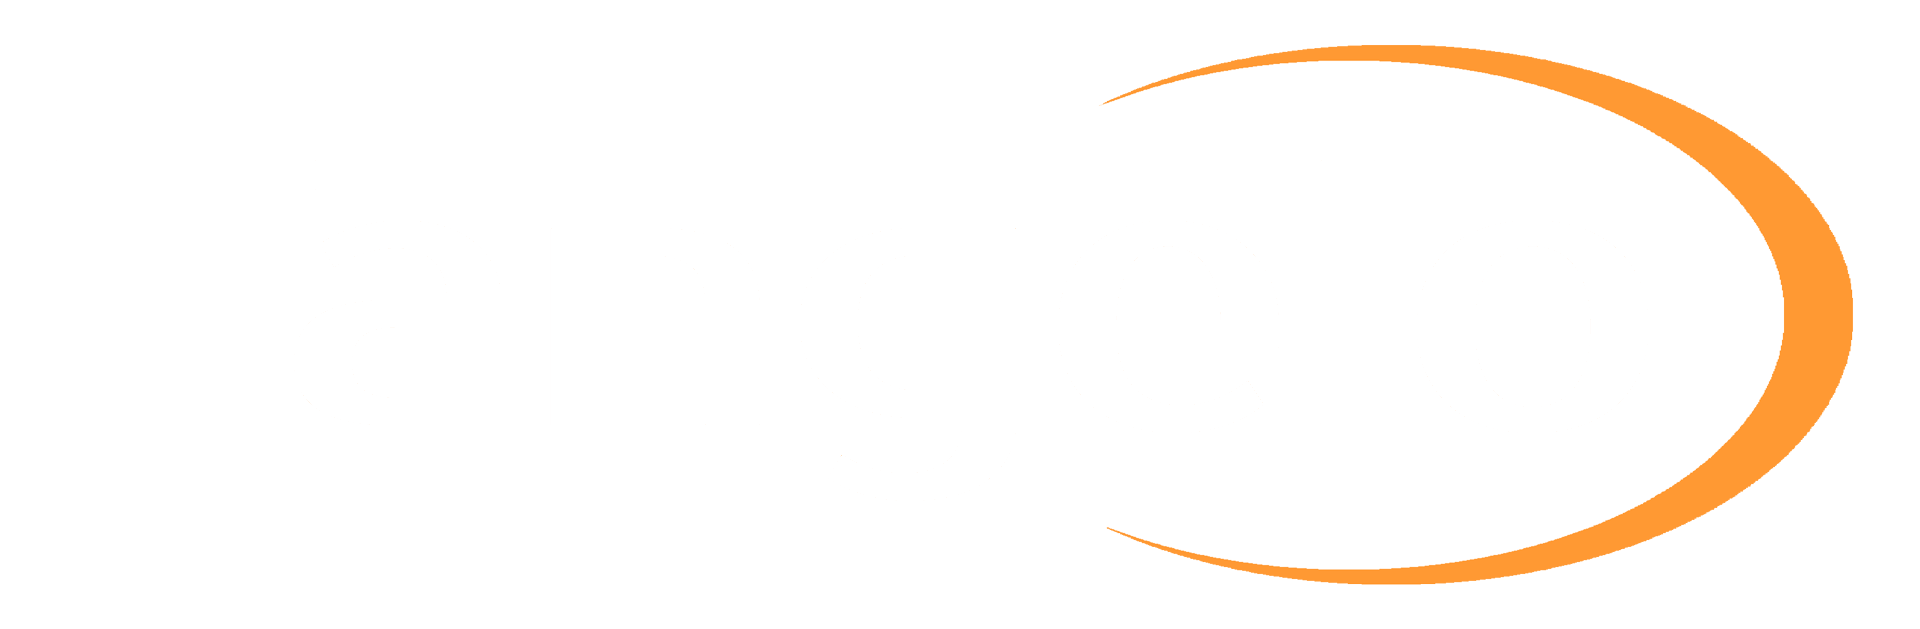 Tangelo hvit logo